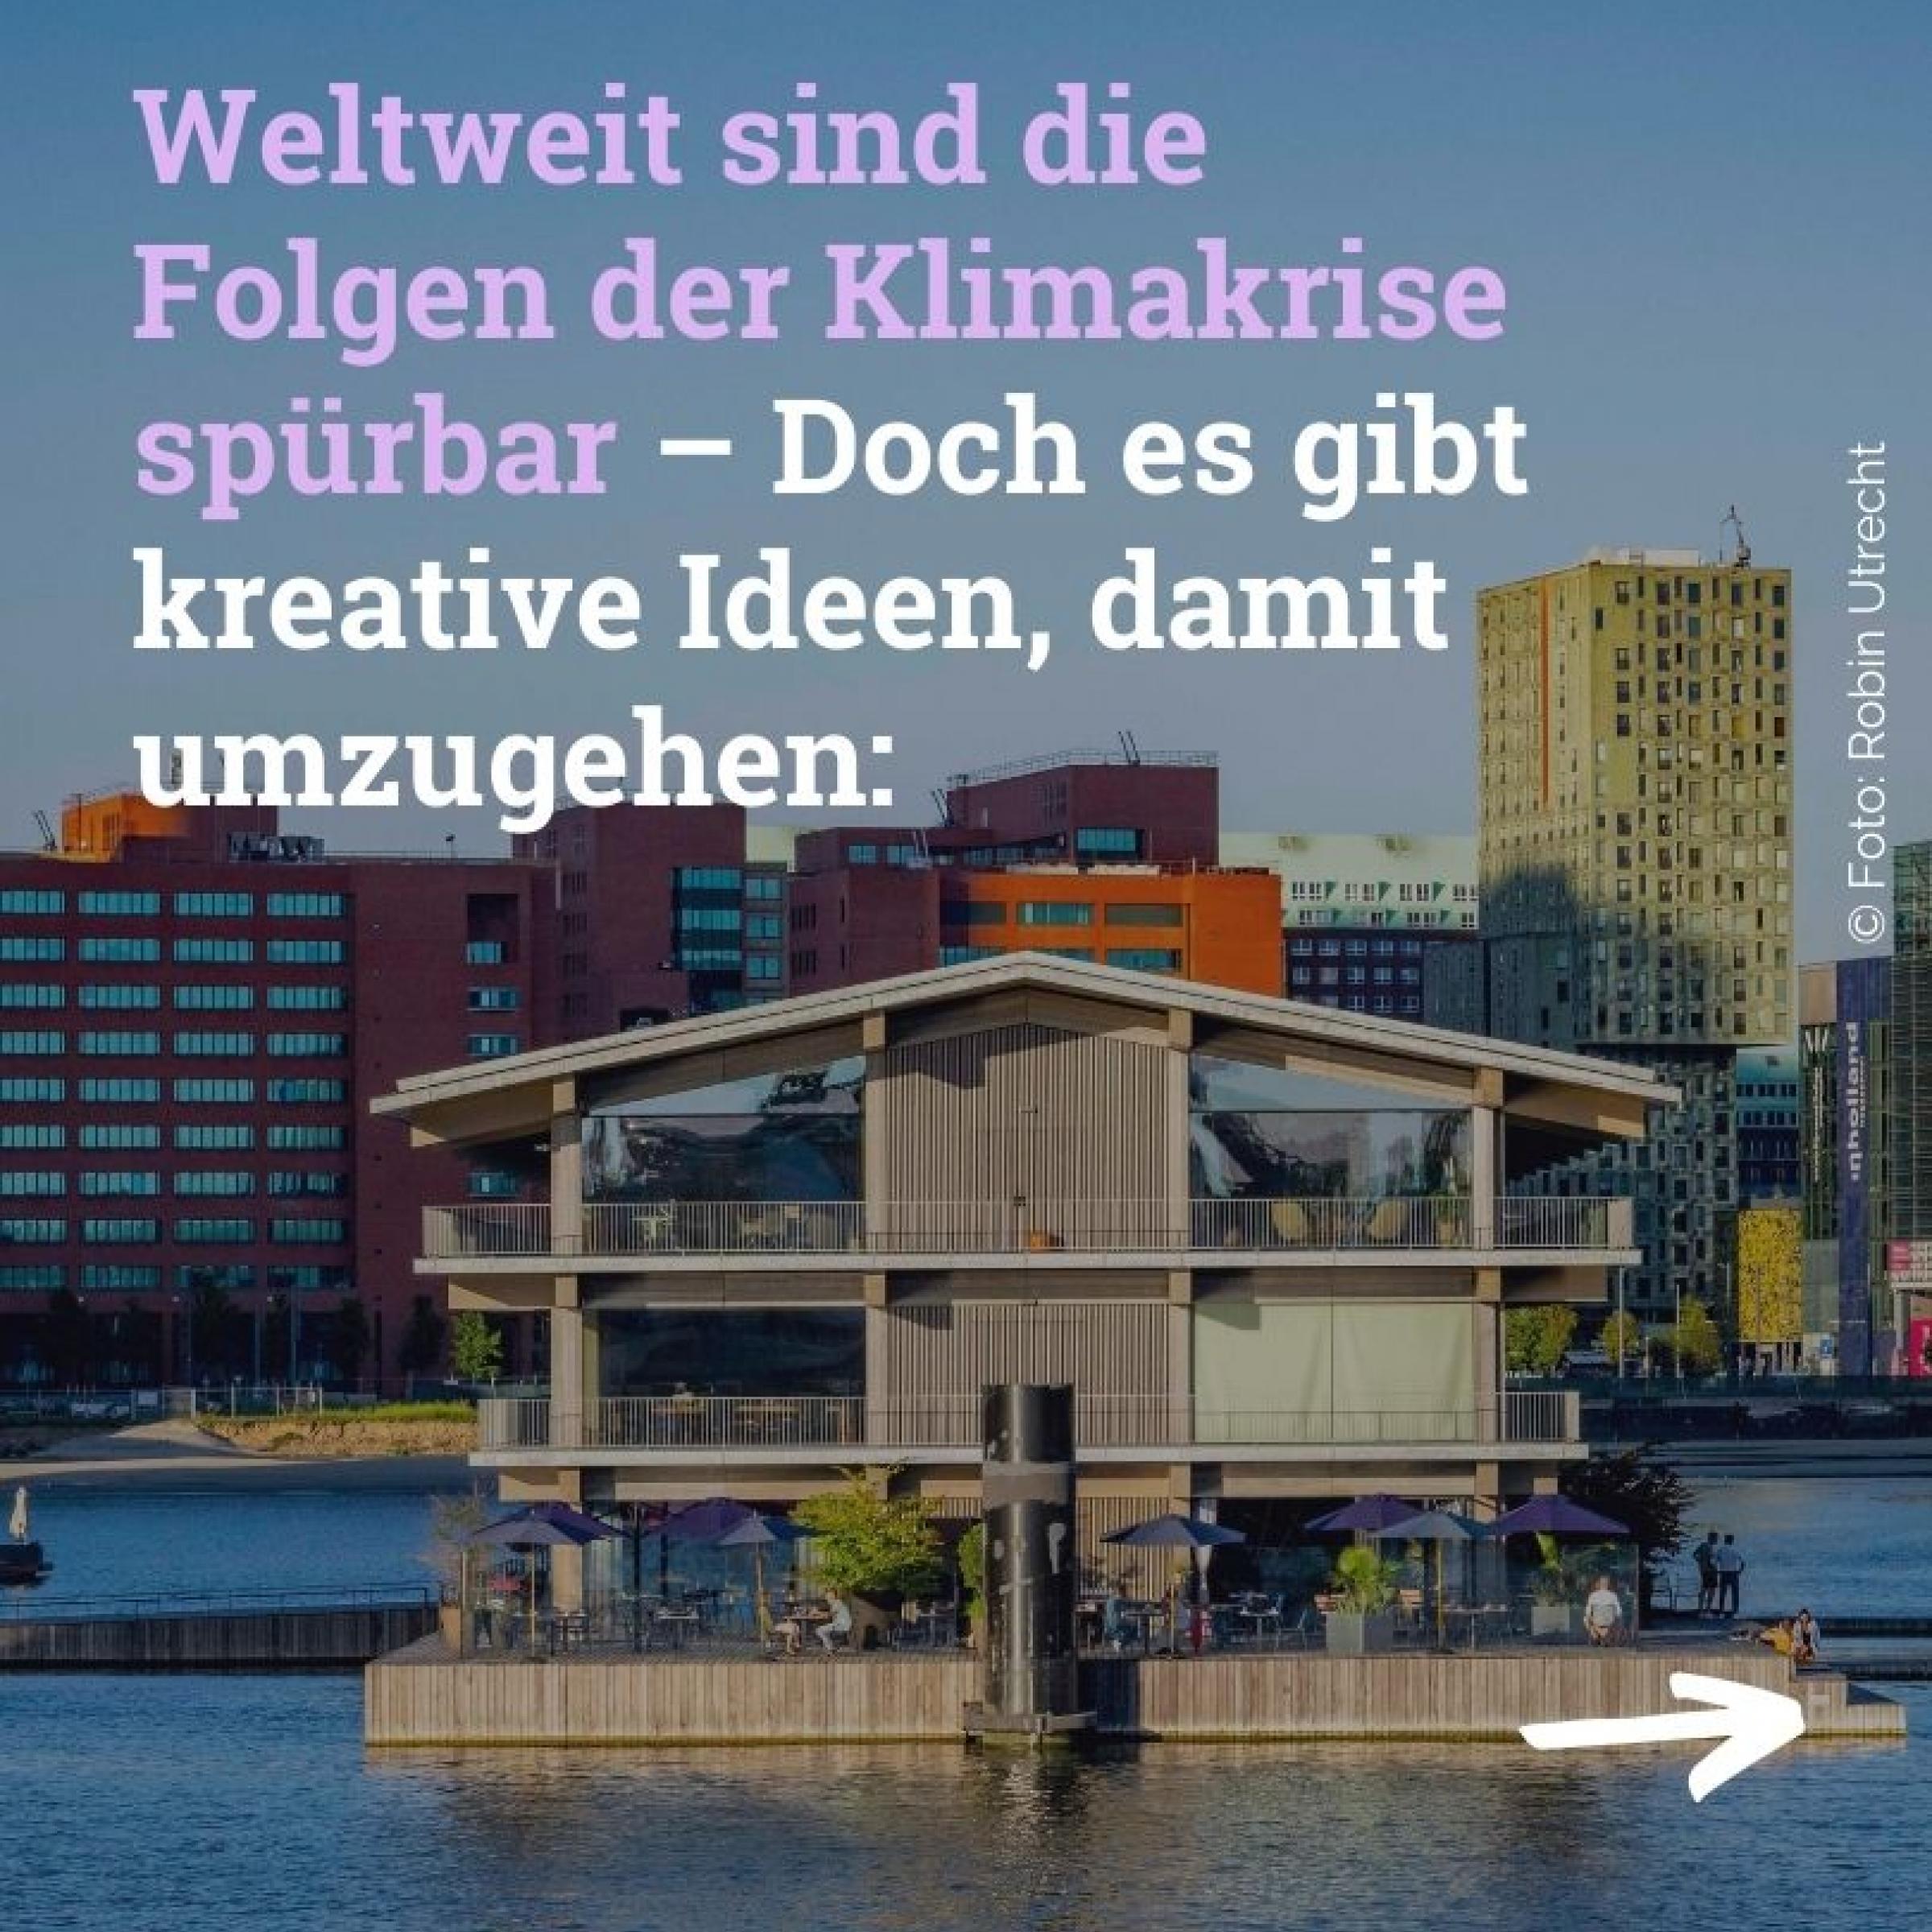 Haus das auf dem Wasser schwimmt, im Hintergrund eine Stadt; Text: Weltweit sind die Folgen der Klimakrise spürbar – Doch es gibt kreative Ideen, damit umzugehen: